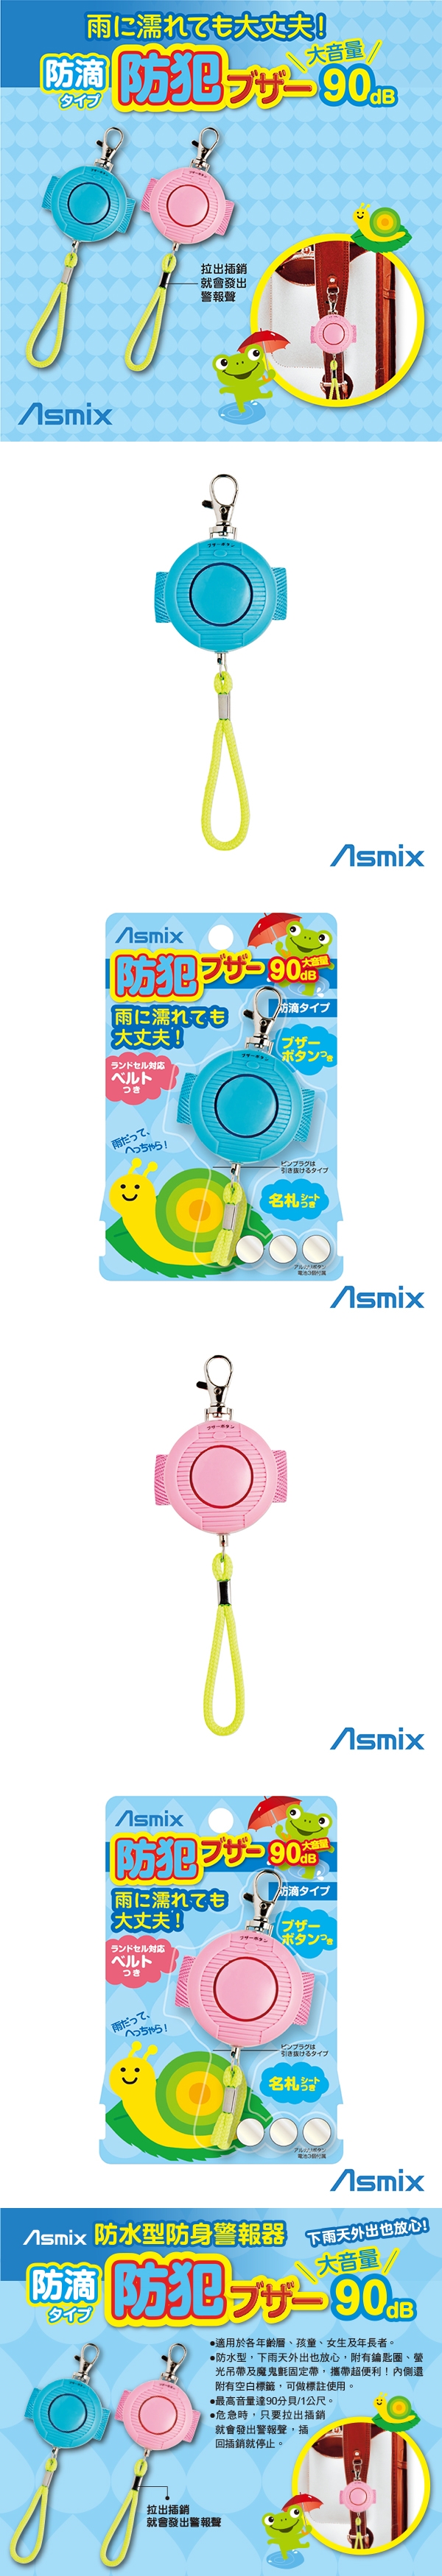 唯可ASMIX-防水型防身警報器(藍色/粉色)EG062